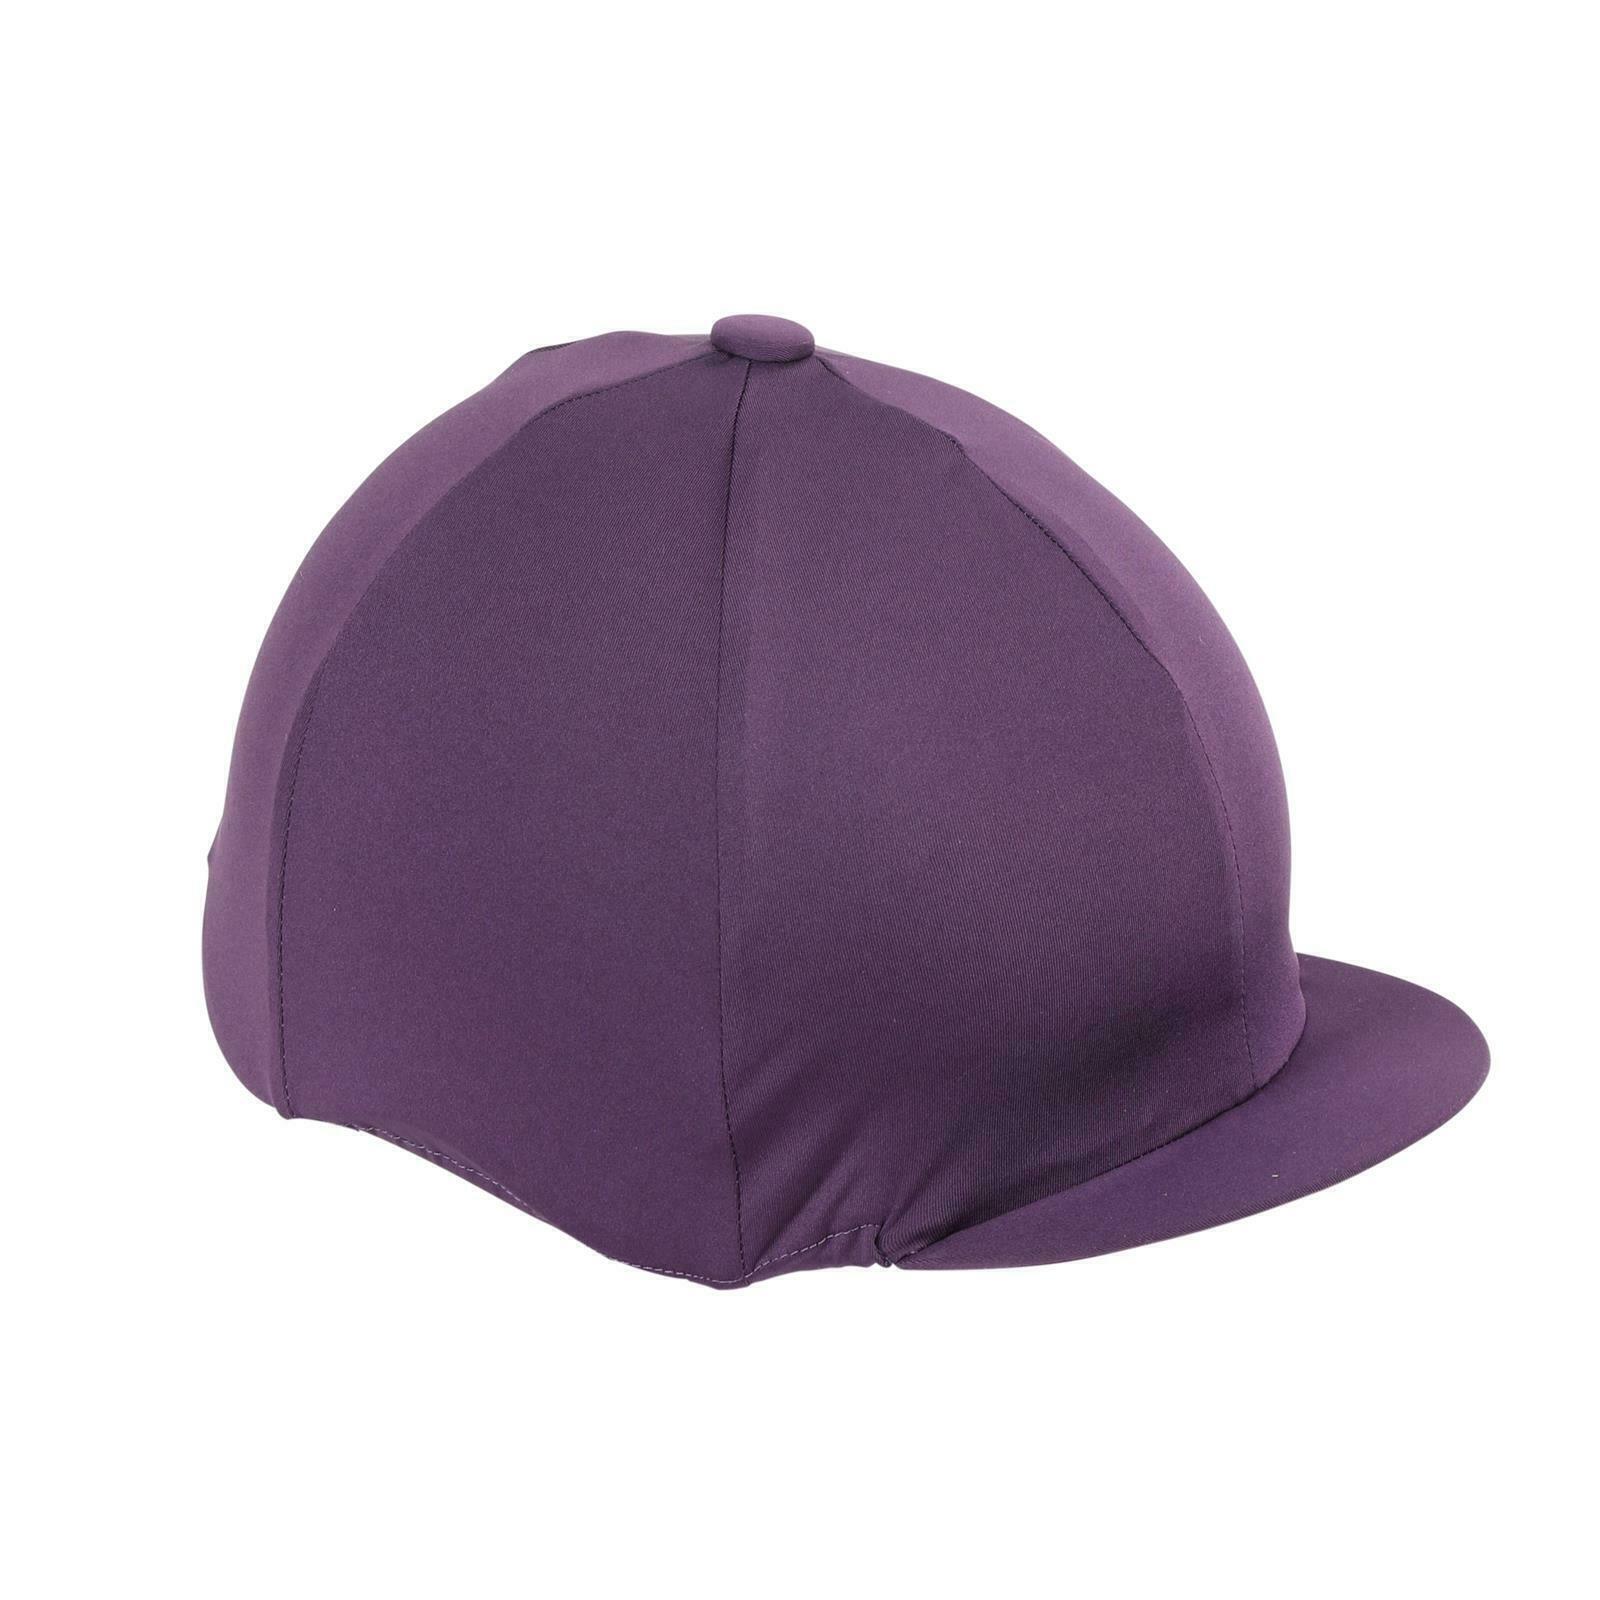 Hat Cover (Plum) 1/1